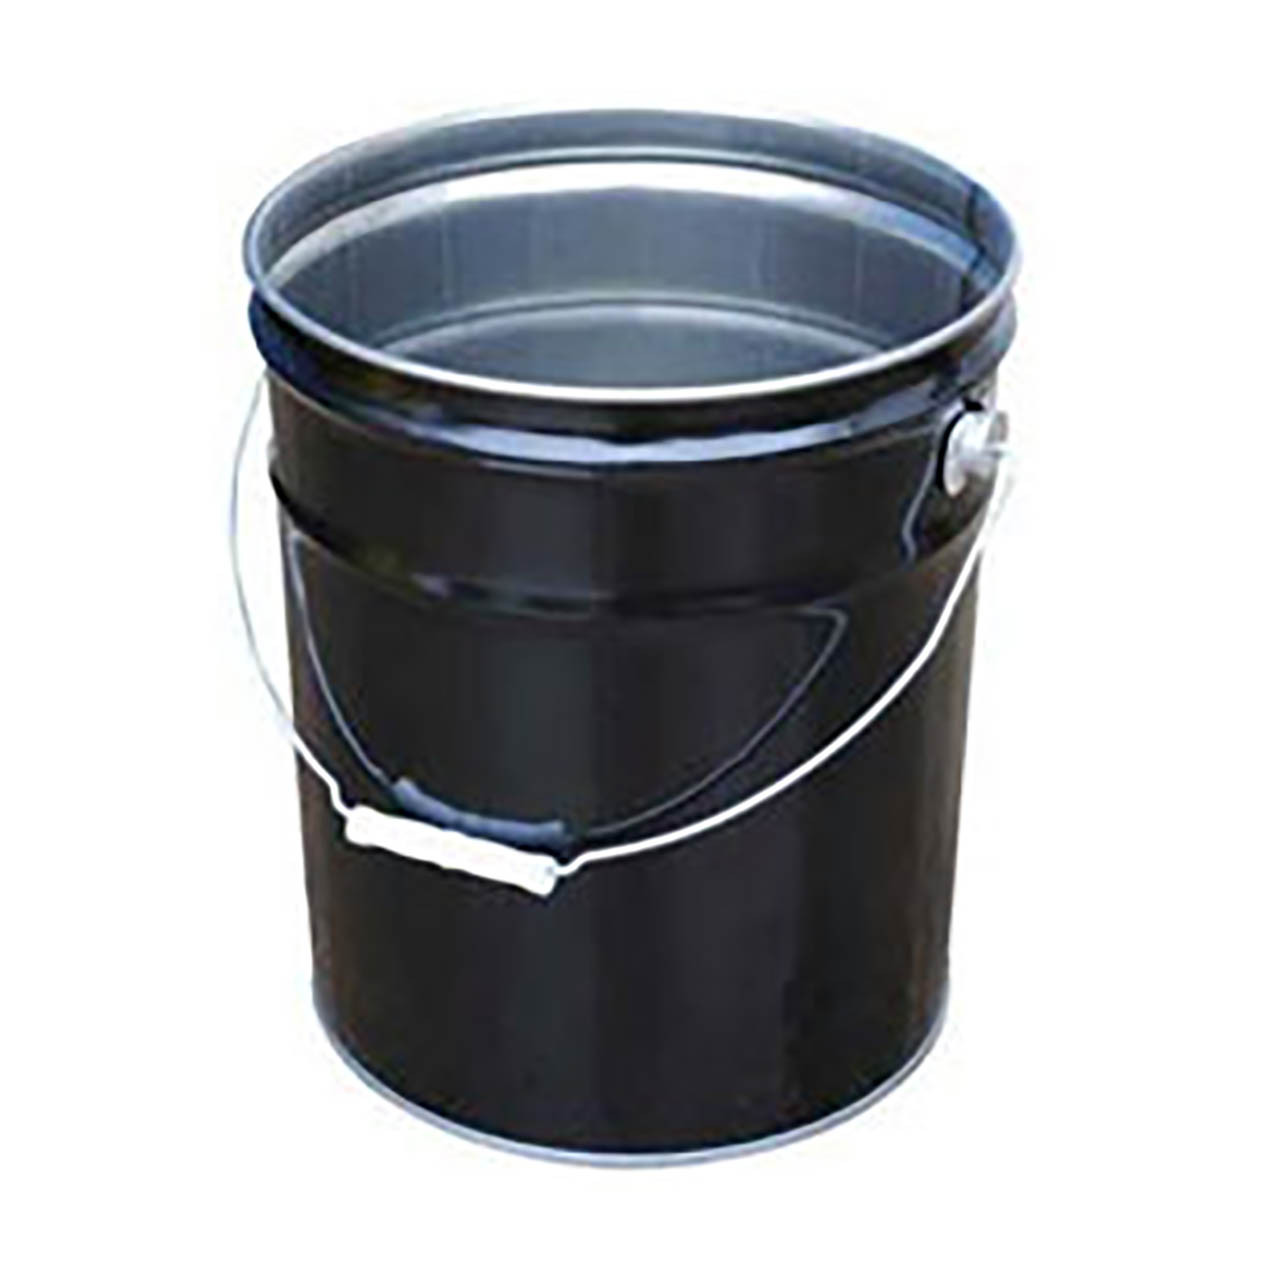 Lancaster Container 5 Gallon Open Head Steel Pail, Black - John M